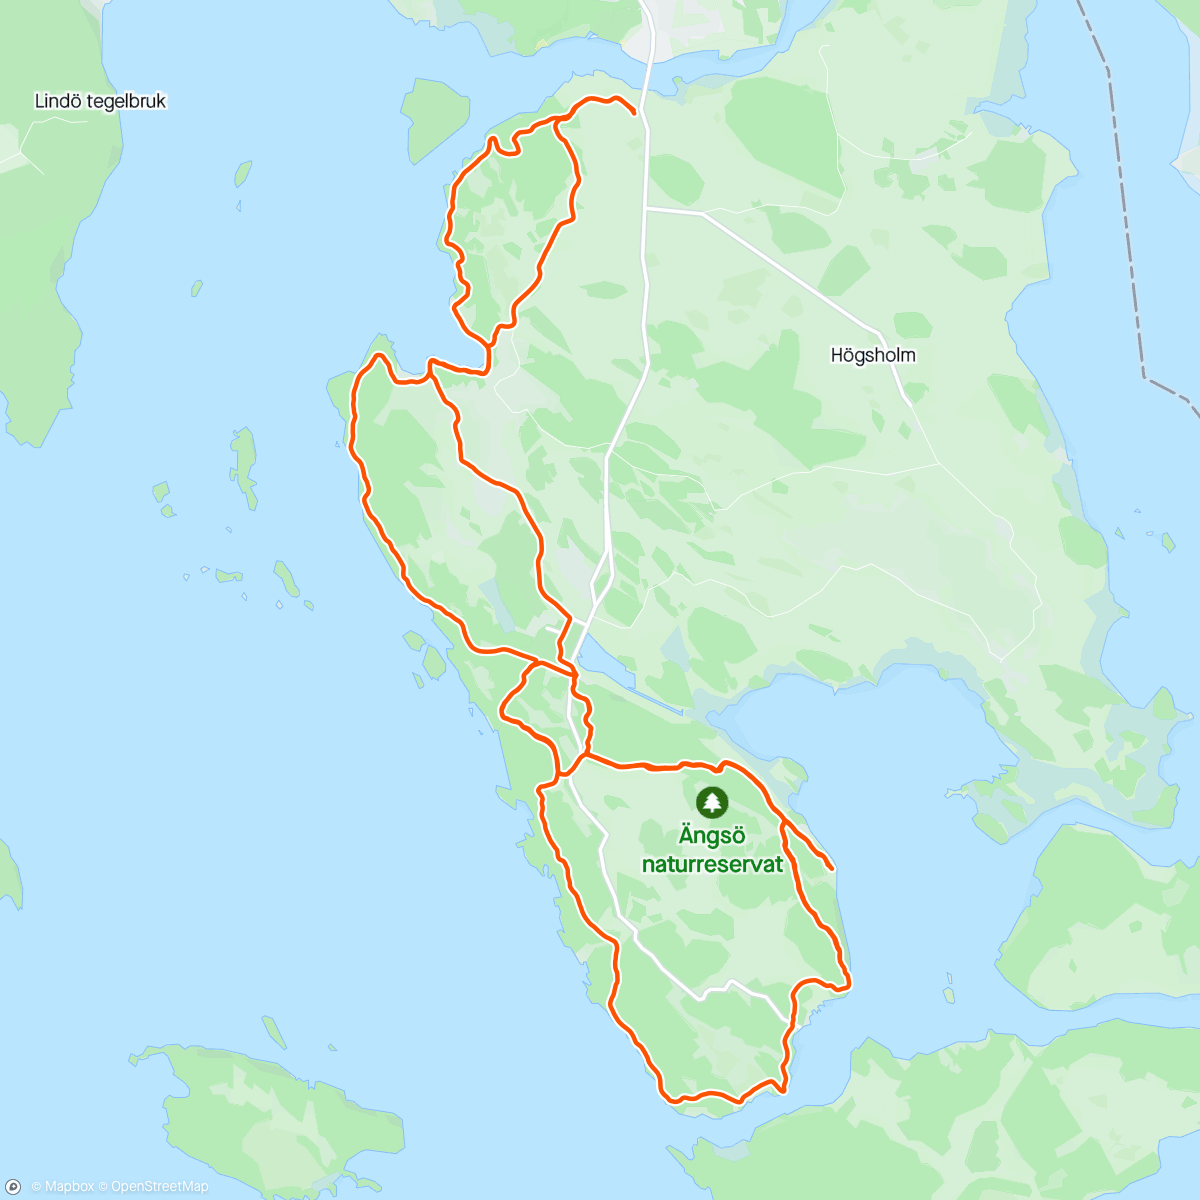 「VCK Snabb - Ängsö」活動的地圖